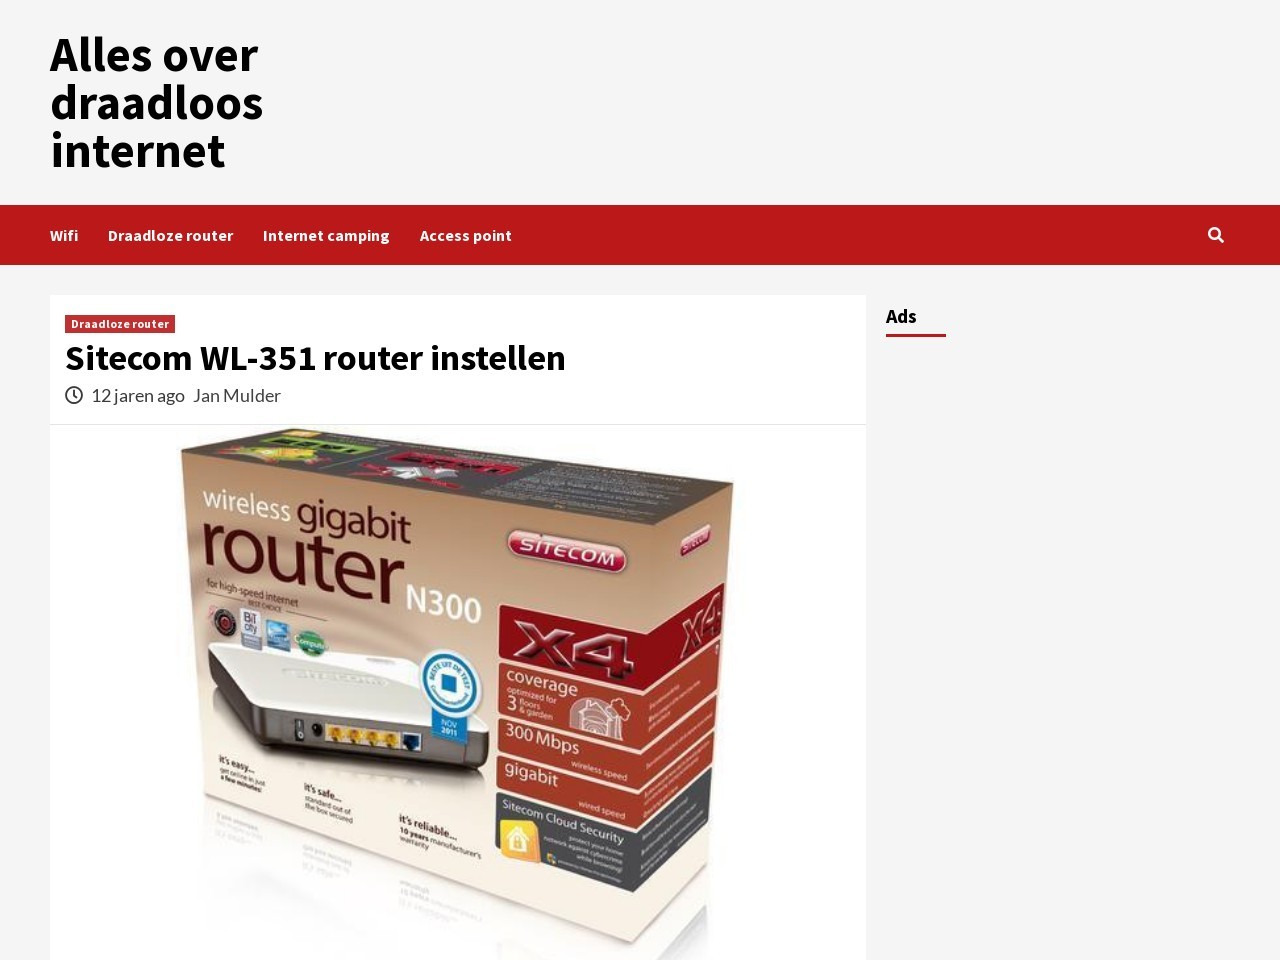 Sitecom WL-351 router instellen - Alles over draadloos internet